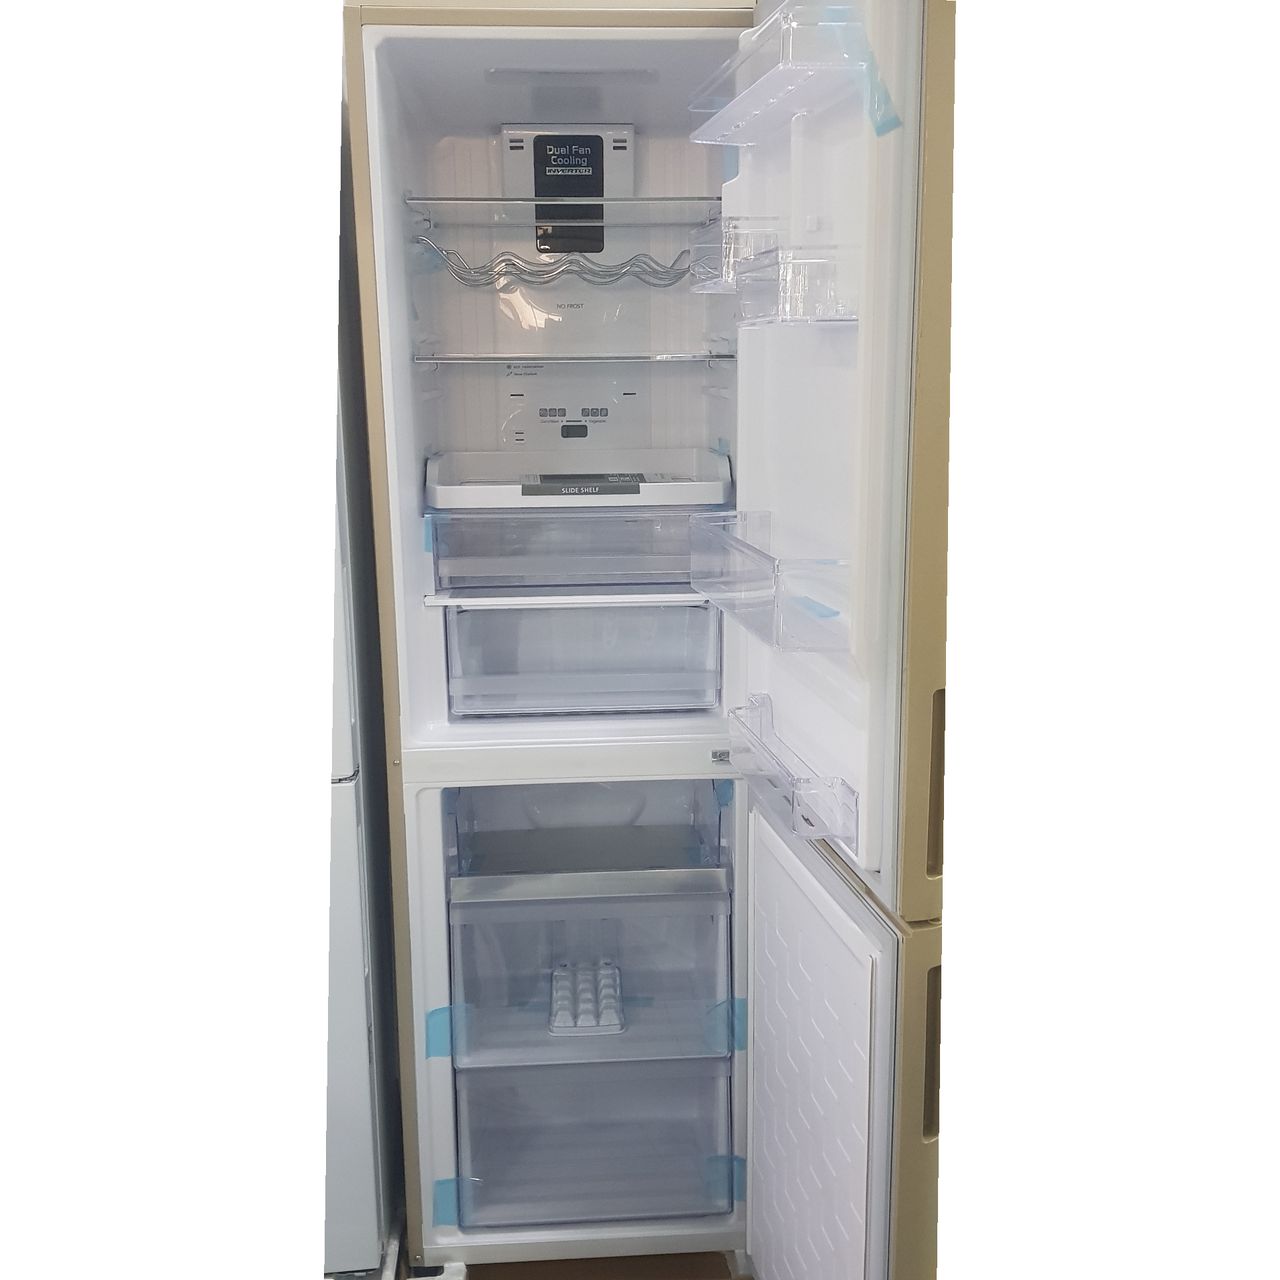 Холодильник двухкамерный Hitachi R-BG410PUN6X 330 л